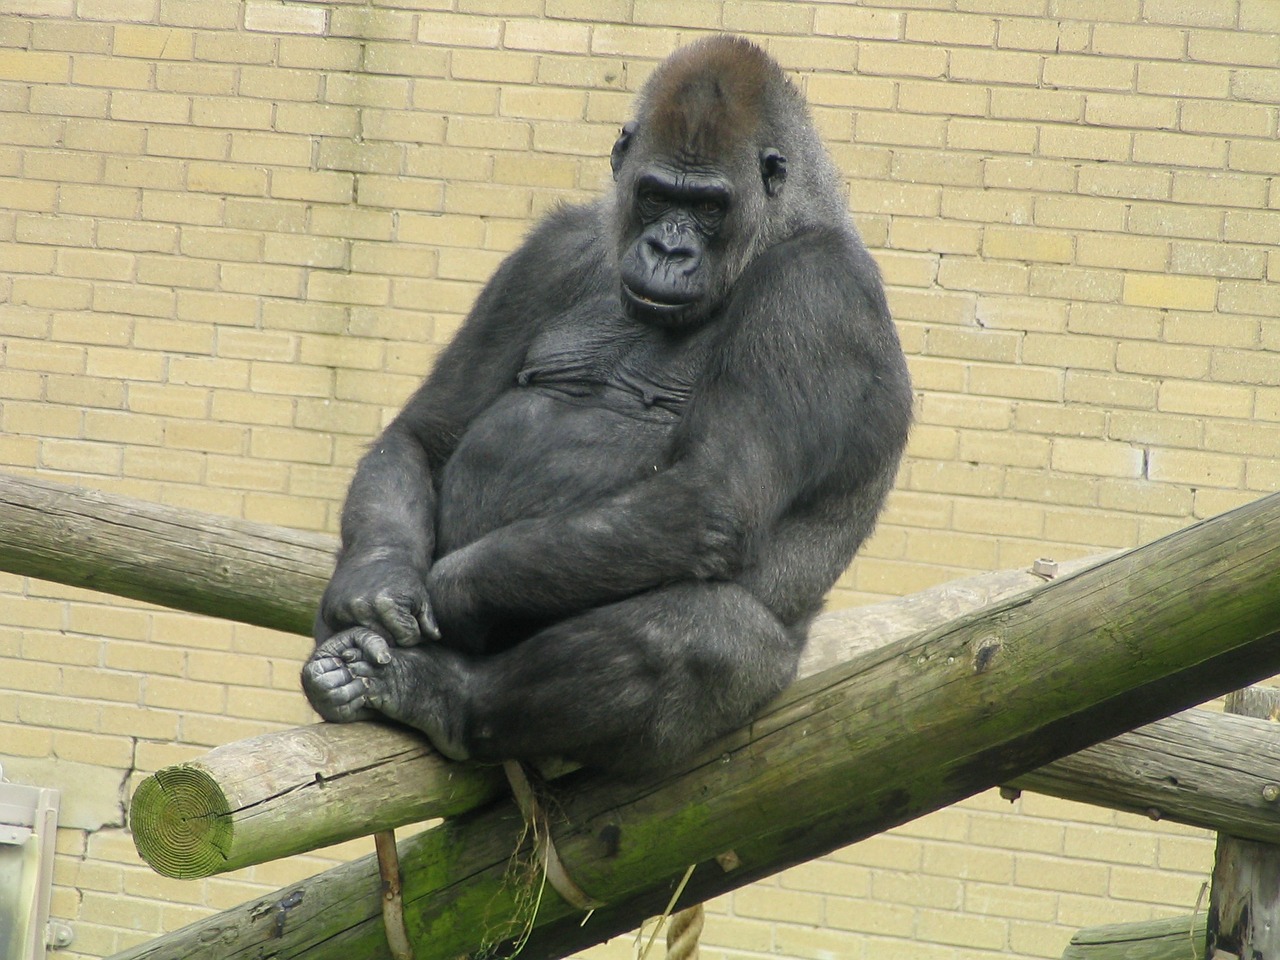 gorilla ape zoo free photo